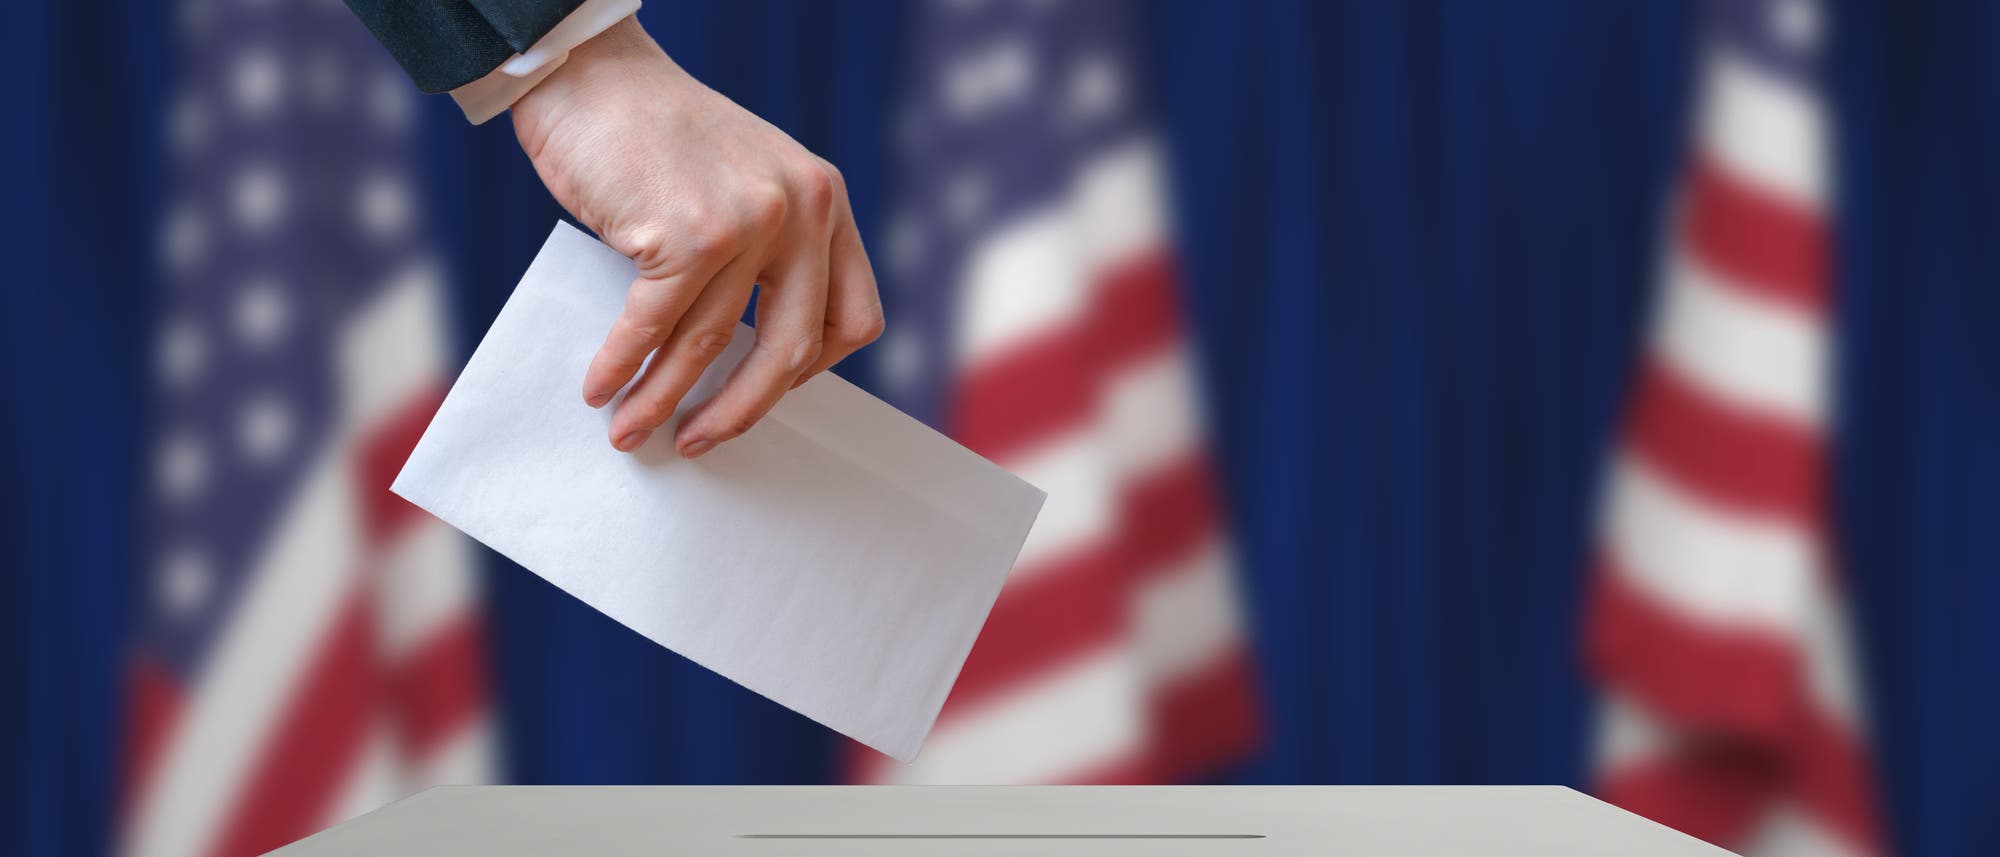 Eine Hand wirft einen Zettel in eine Wahlurne. Im Hintergrund drei US-Flaggen